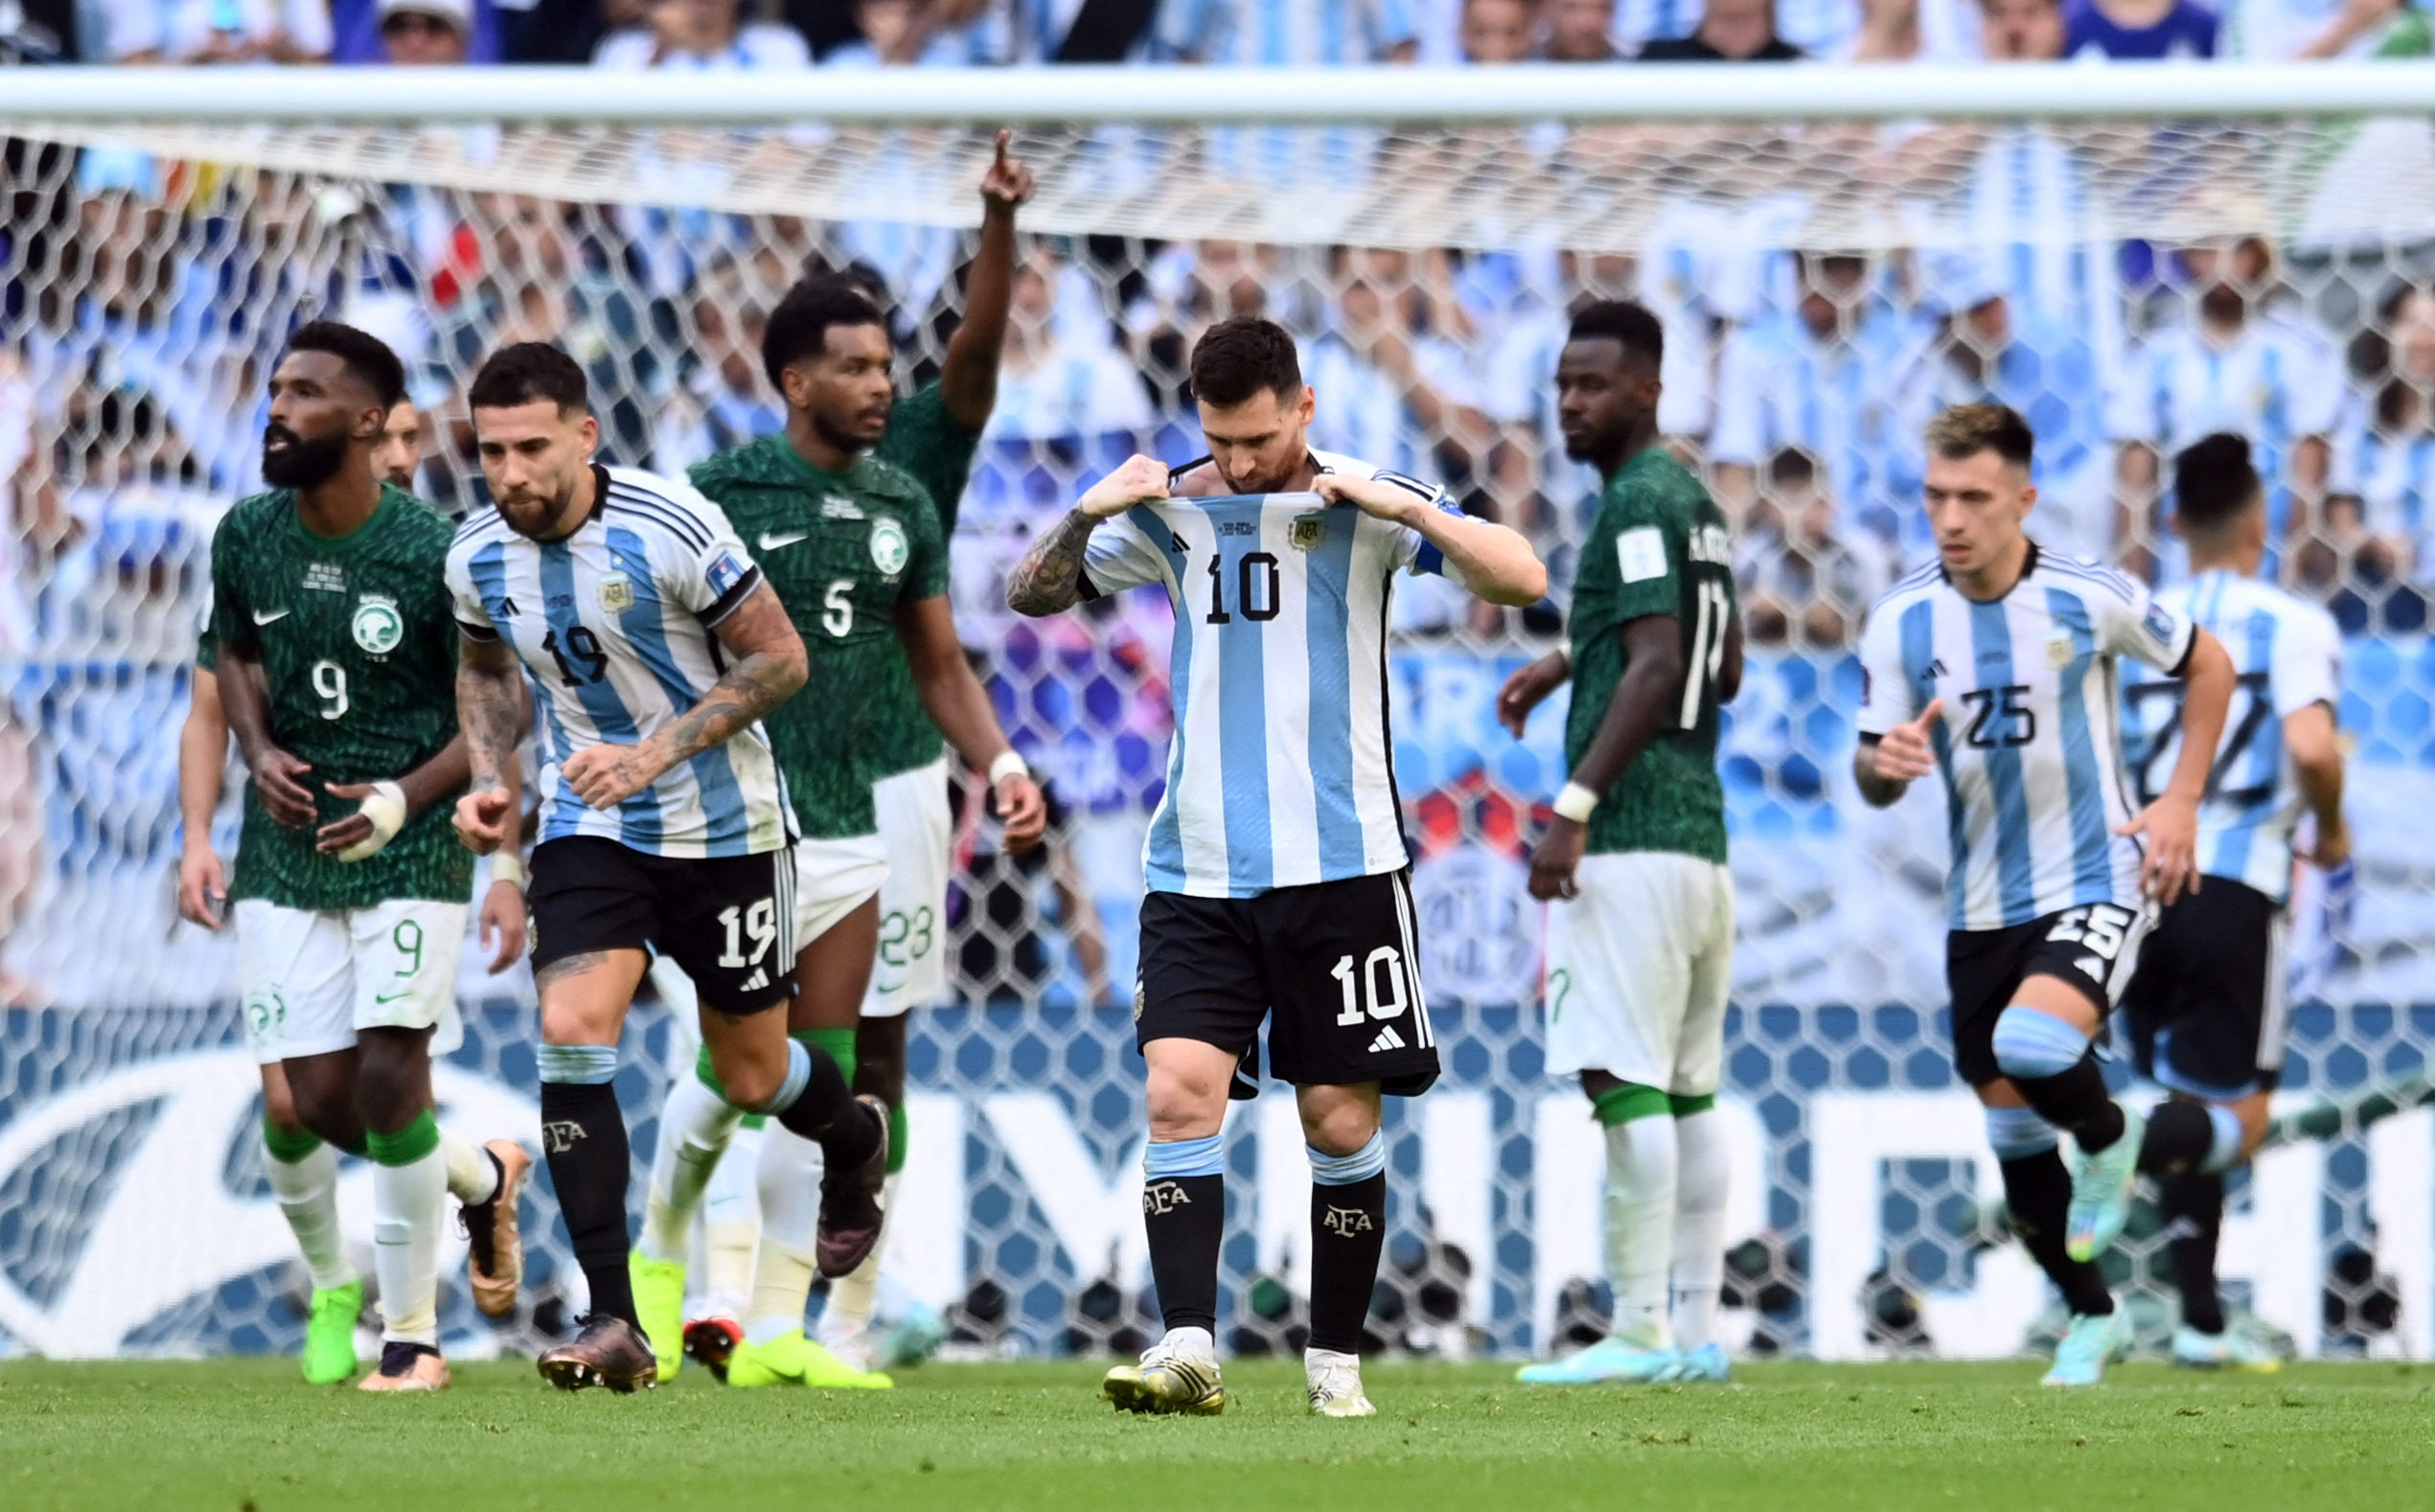 Lo tuvo Messi con un cabeza, pero contuvo el arquero (REUTERS/Annegret Hilse)